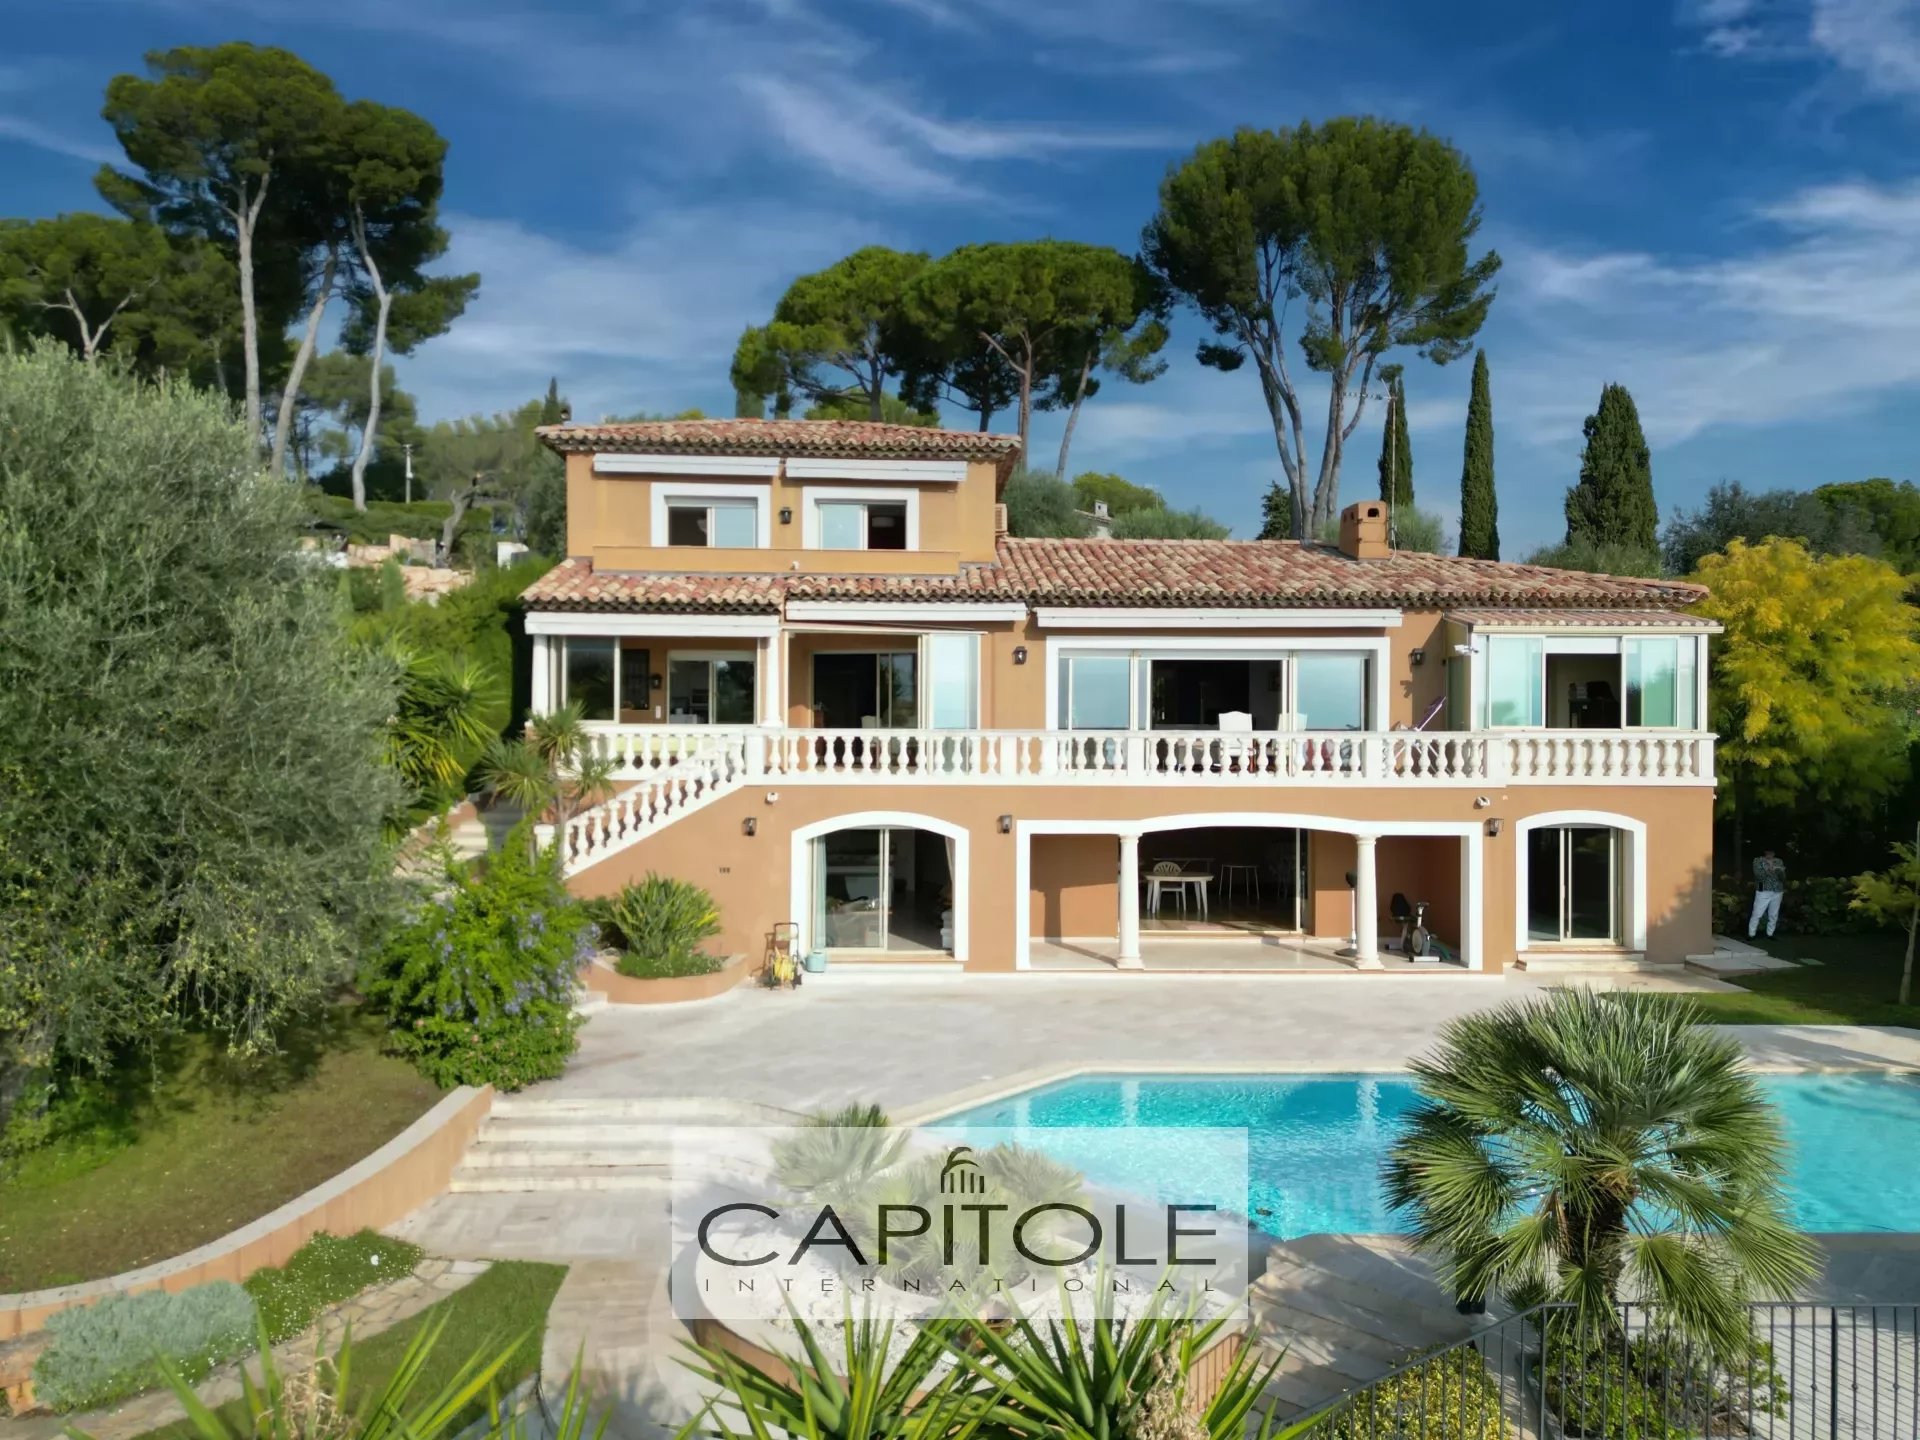 A vendre, Golfe Juan, villa provençale 8 pièces, vue mer panoramique, jardin méditerranéen de 2 300 m², piscine, garage